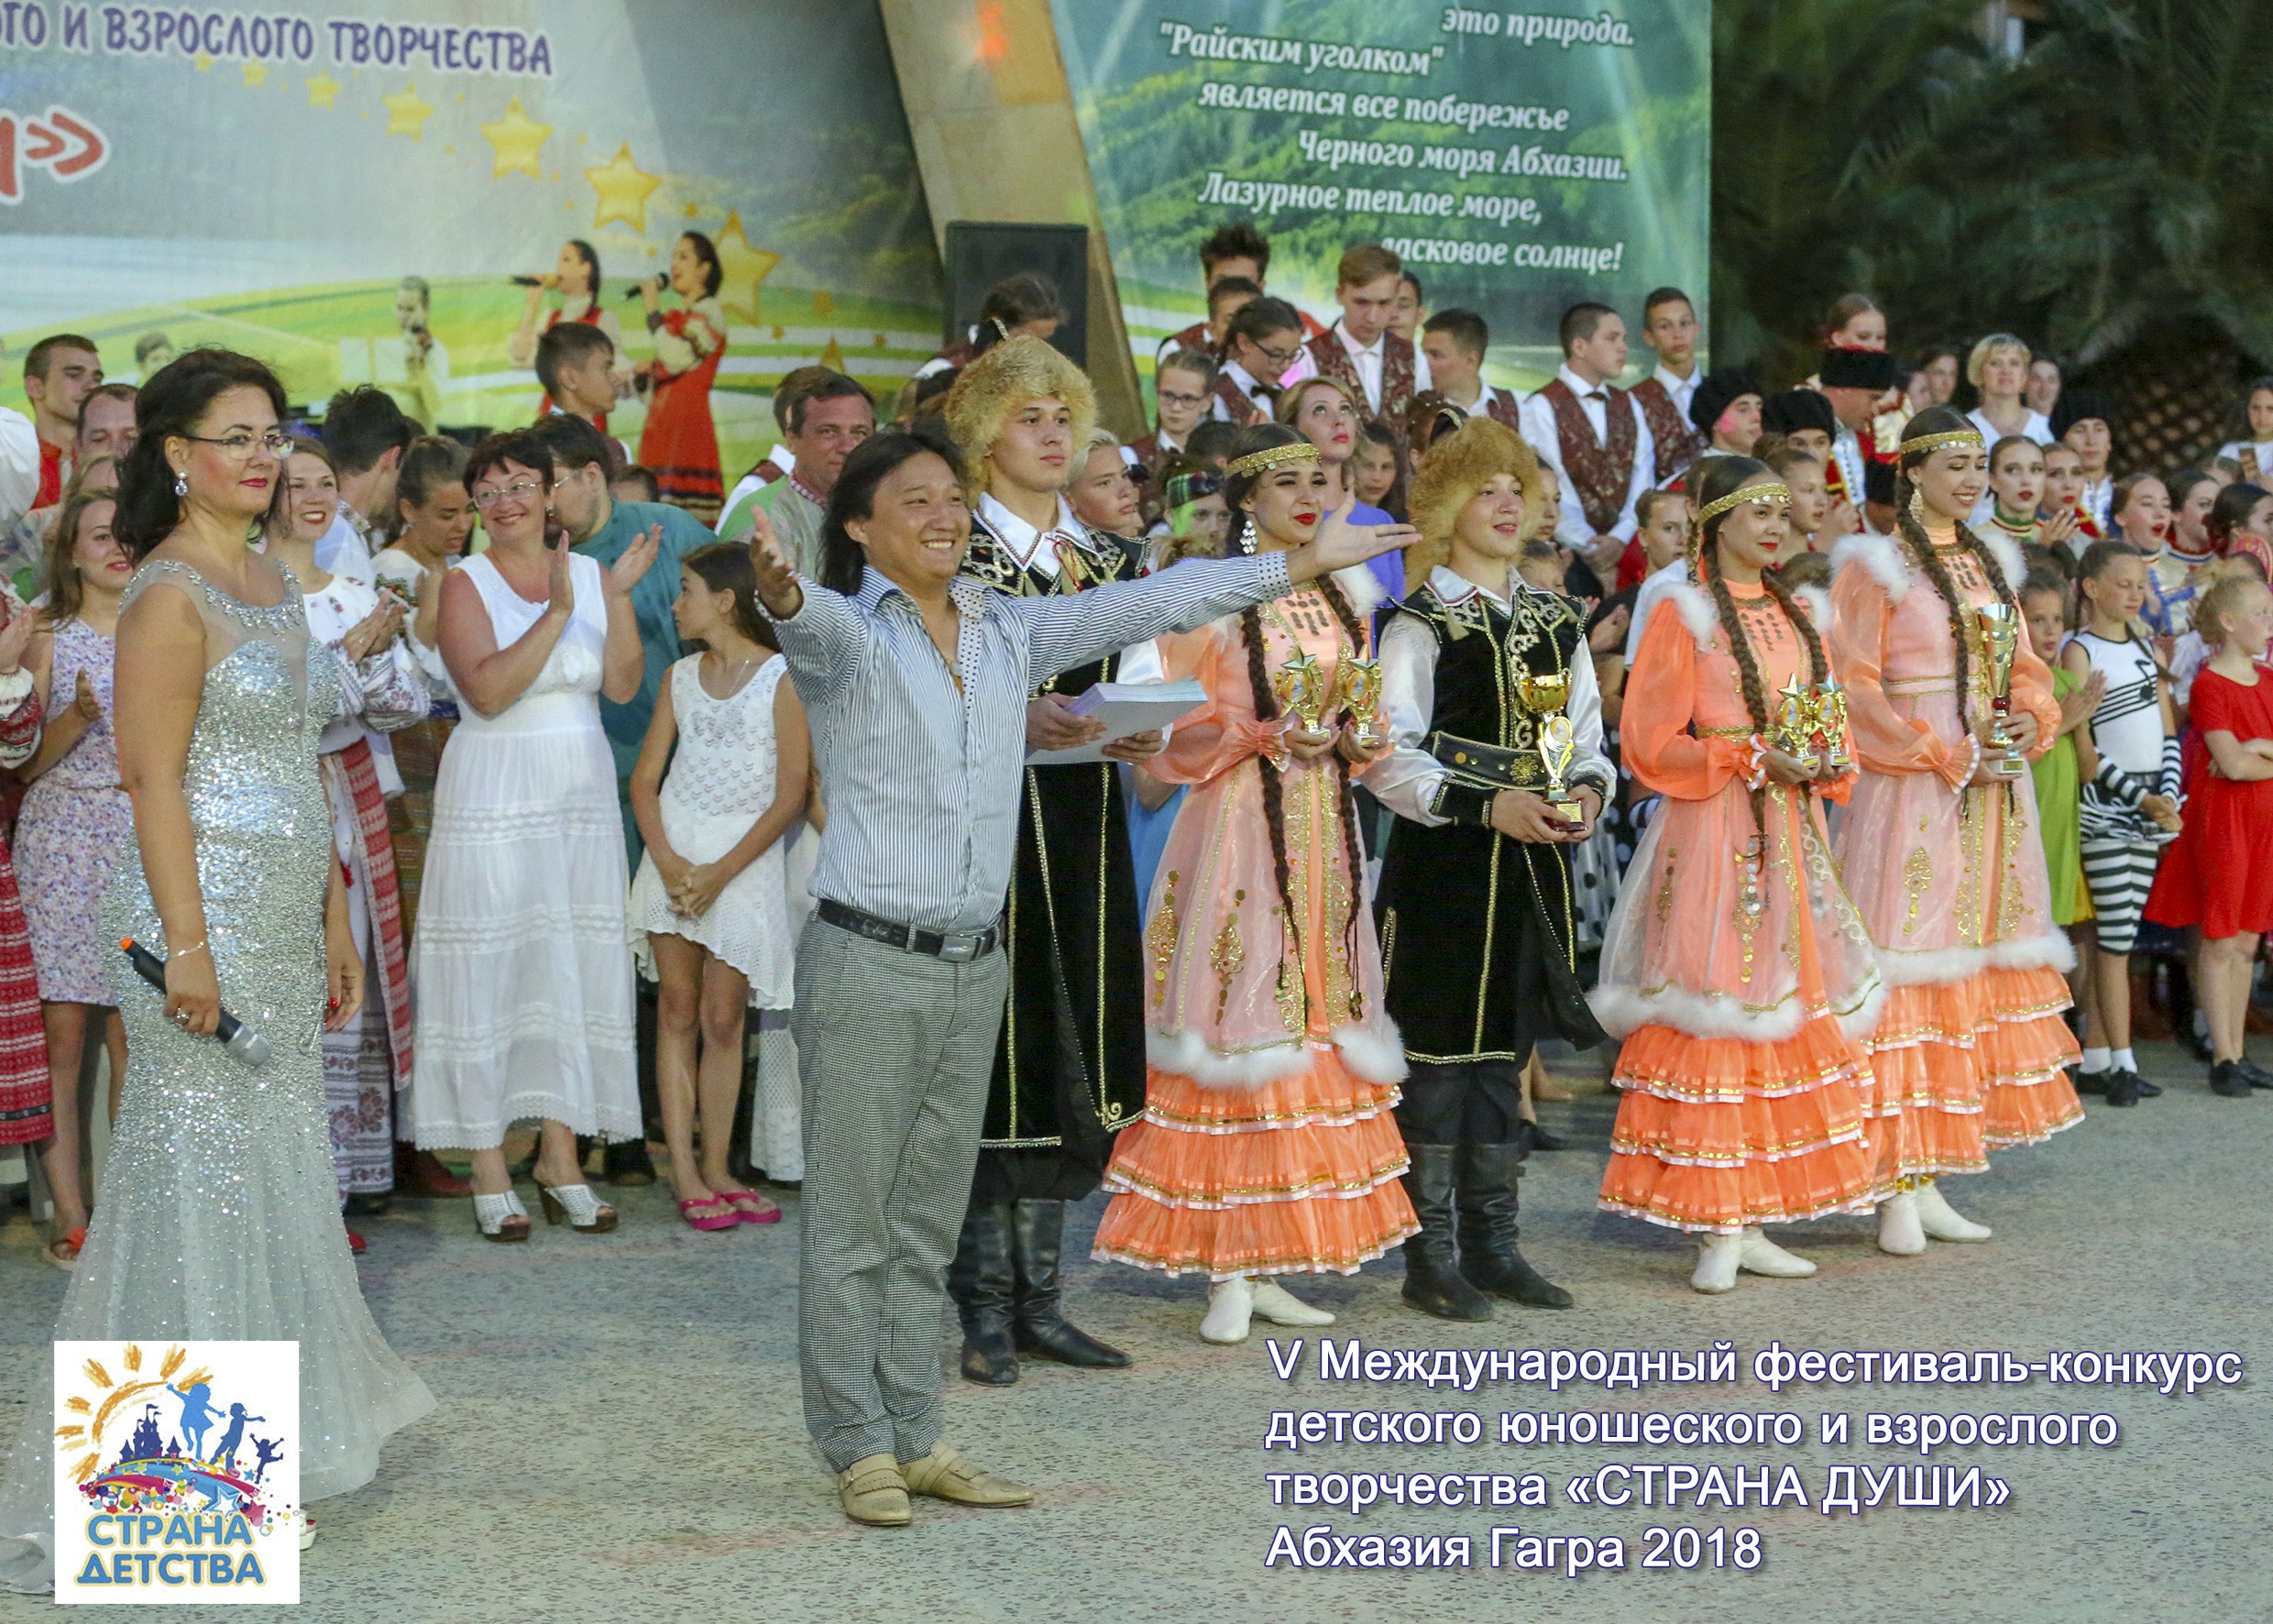 В г.Гагра Республики Абхазия с 01 по 12 июля 2018г. завершился ещё один этап V Юбилейного Международного фестиваля-конкурса детского, юношеского и взрослого творчества «Страна души». 